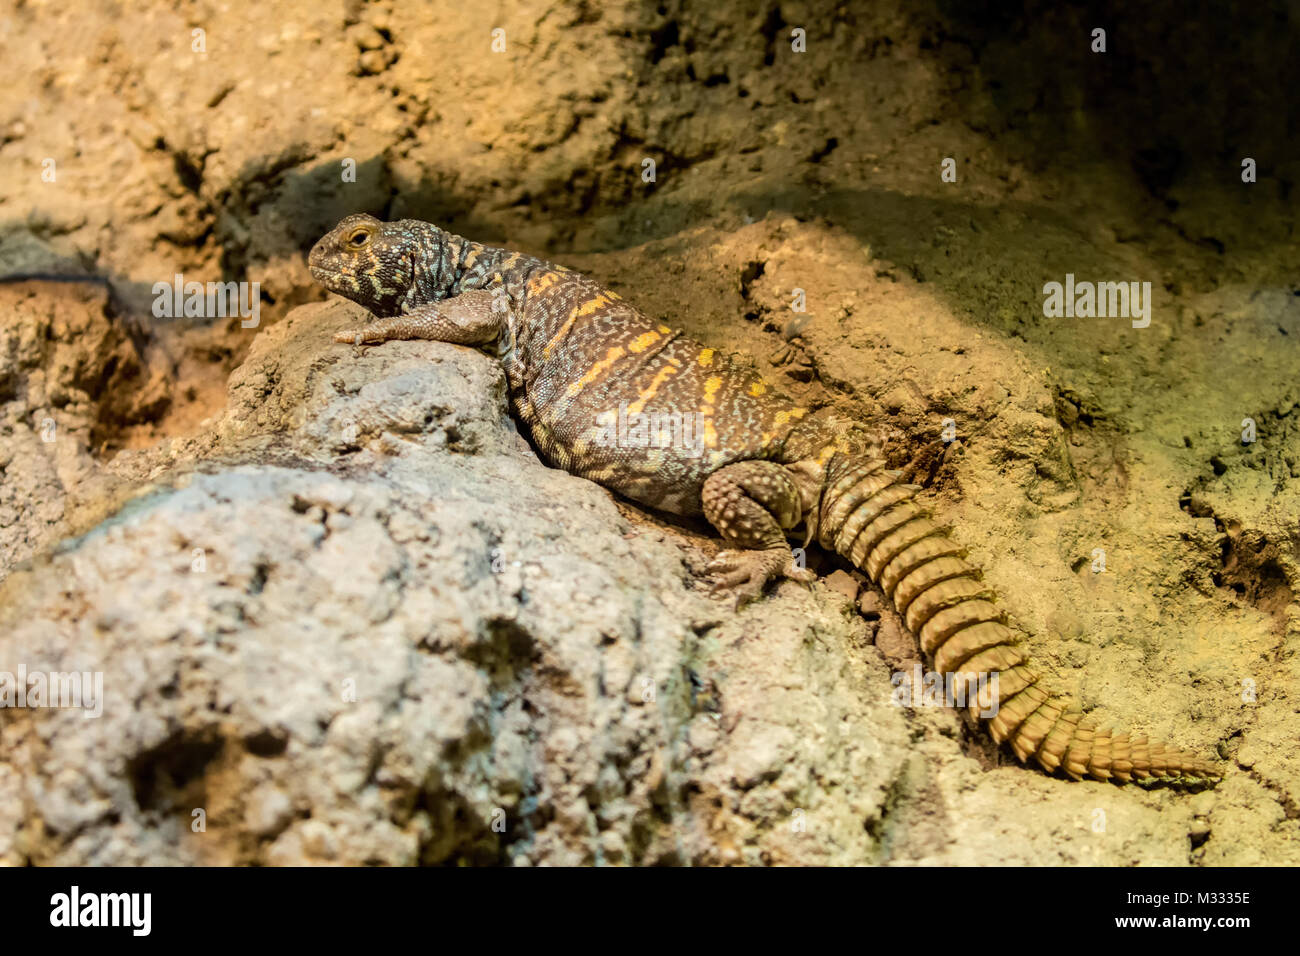 medium sized reptiles